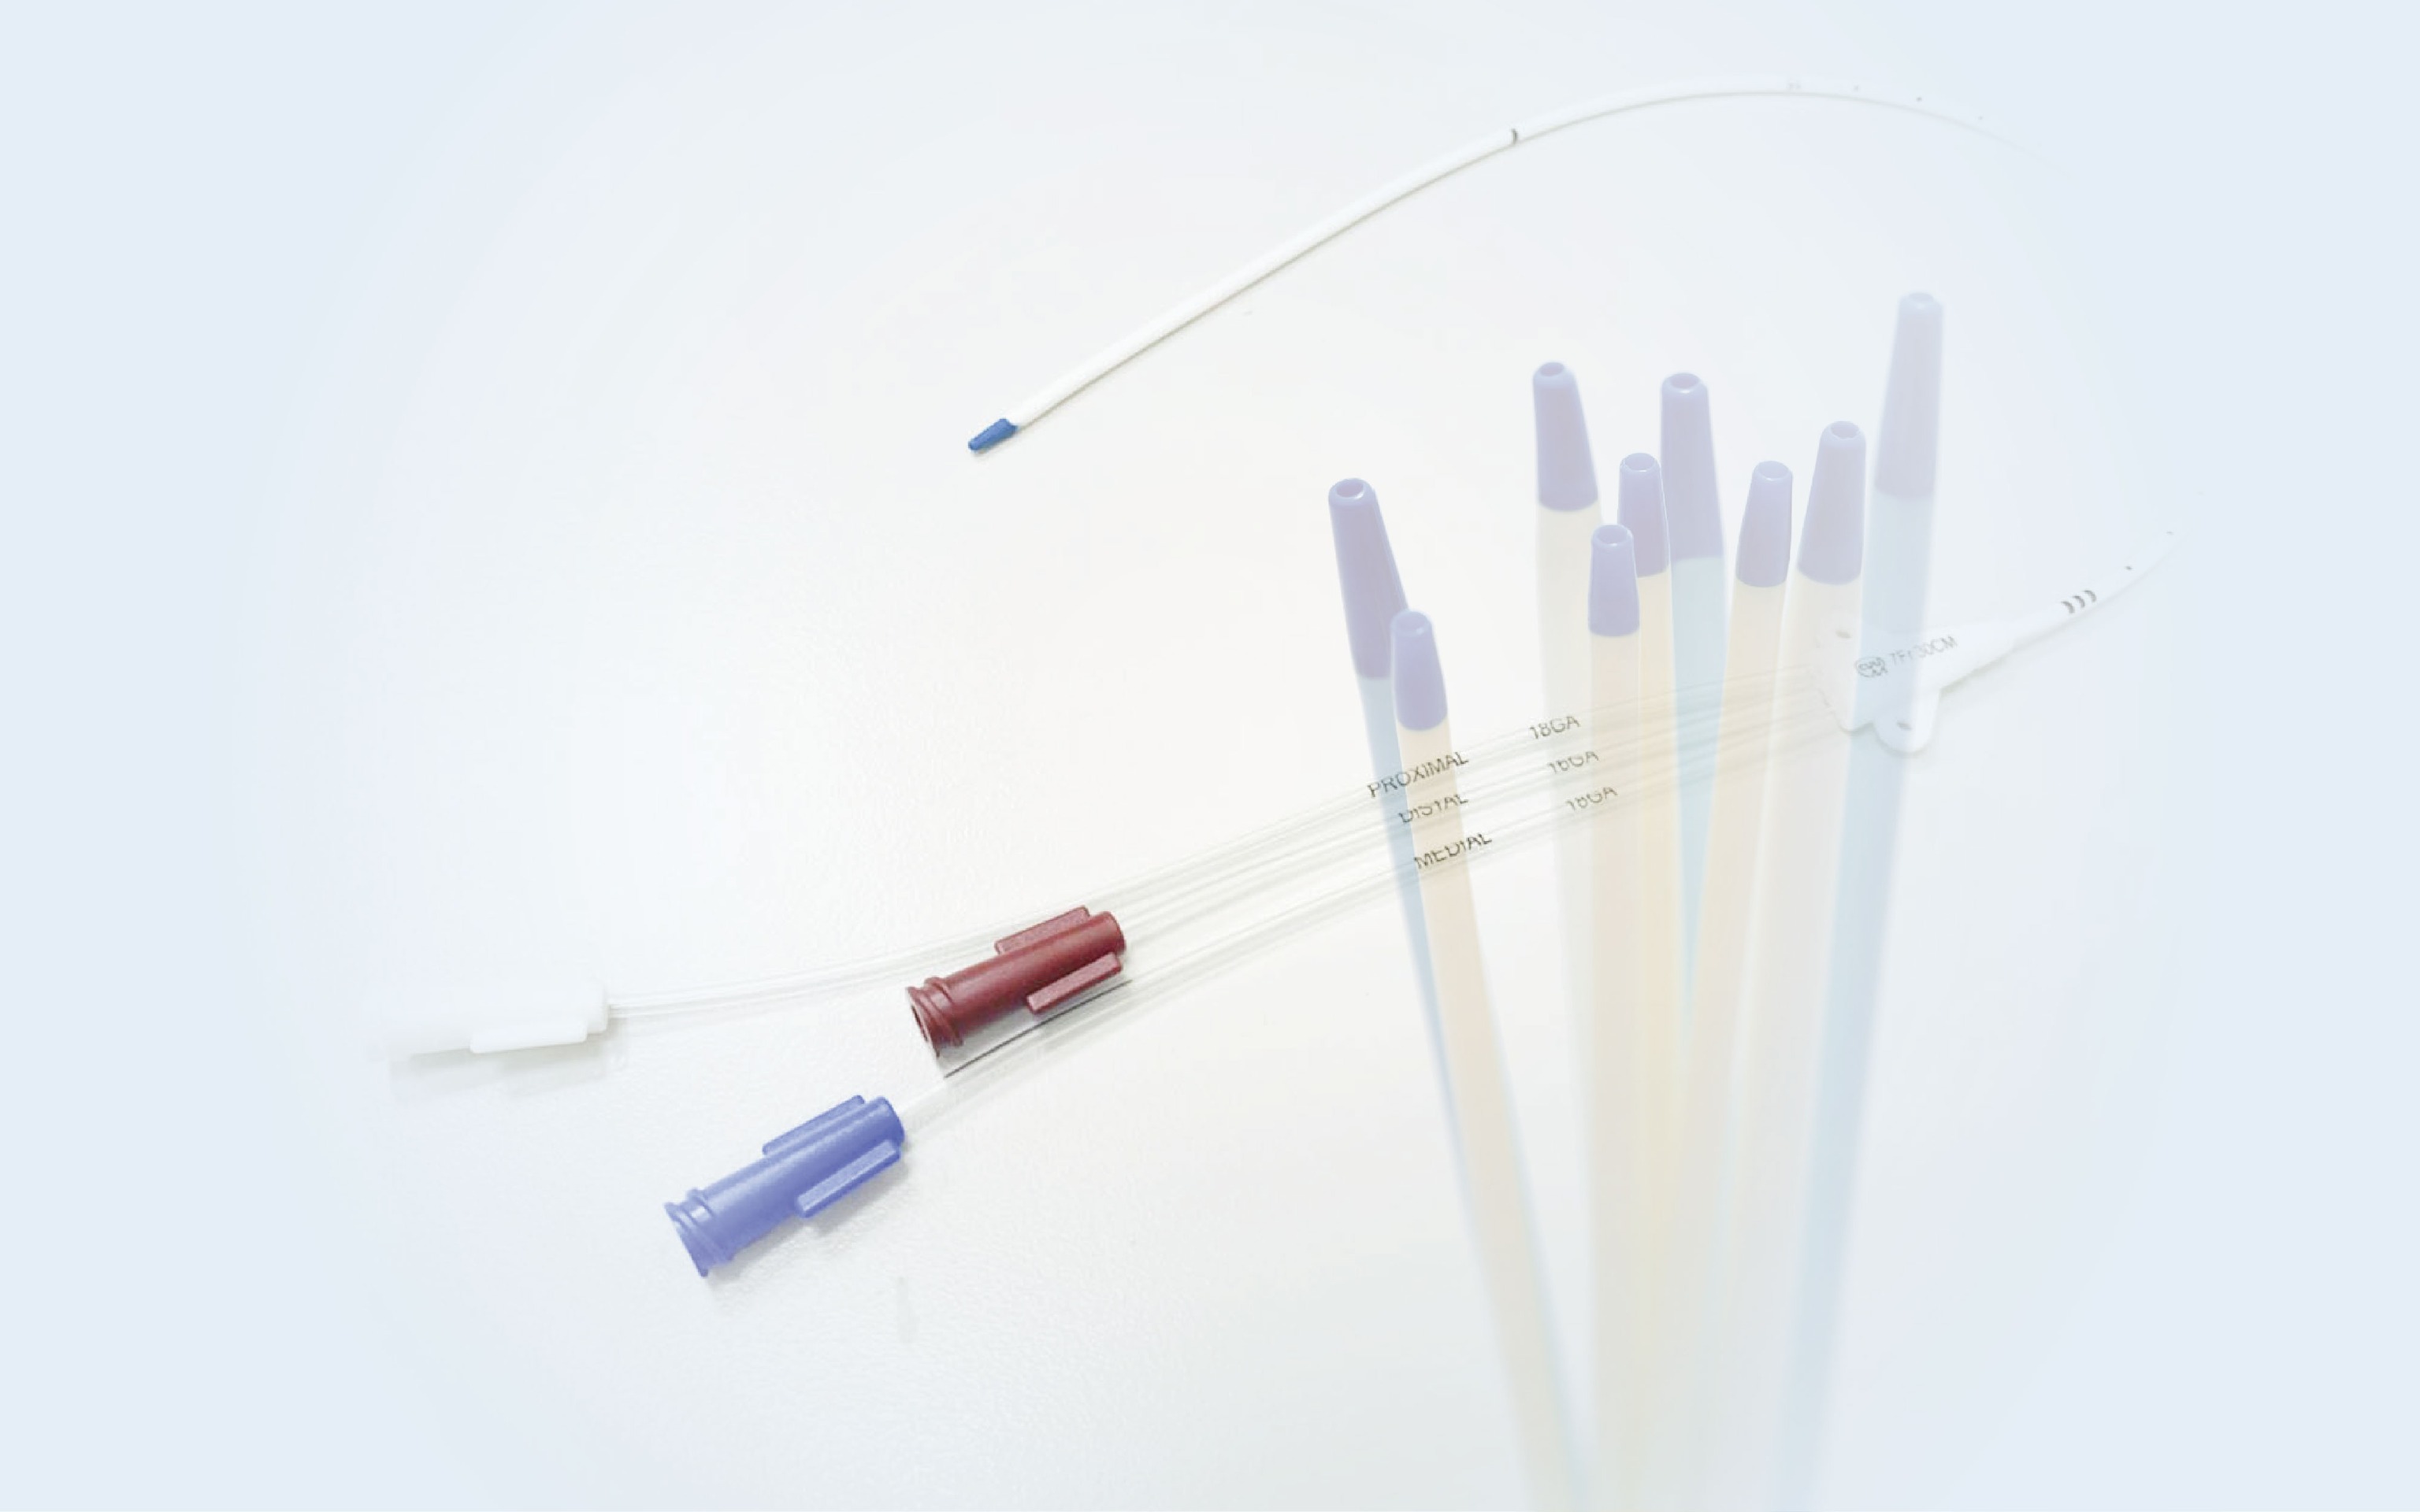 Central Venous Catheter (CVC) Introduction